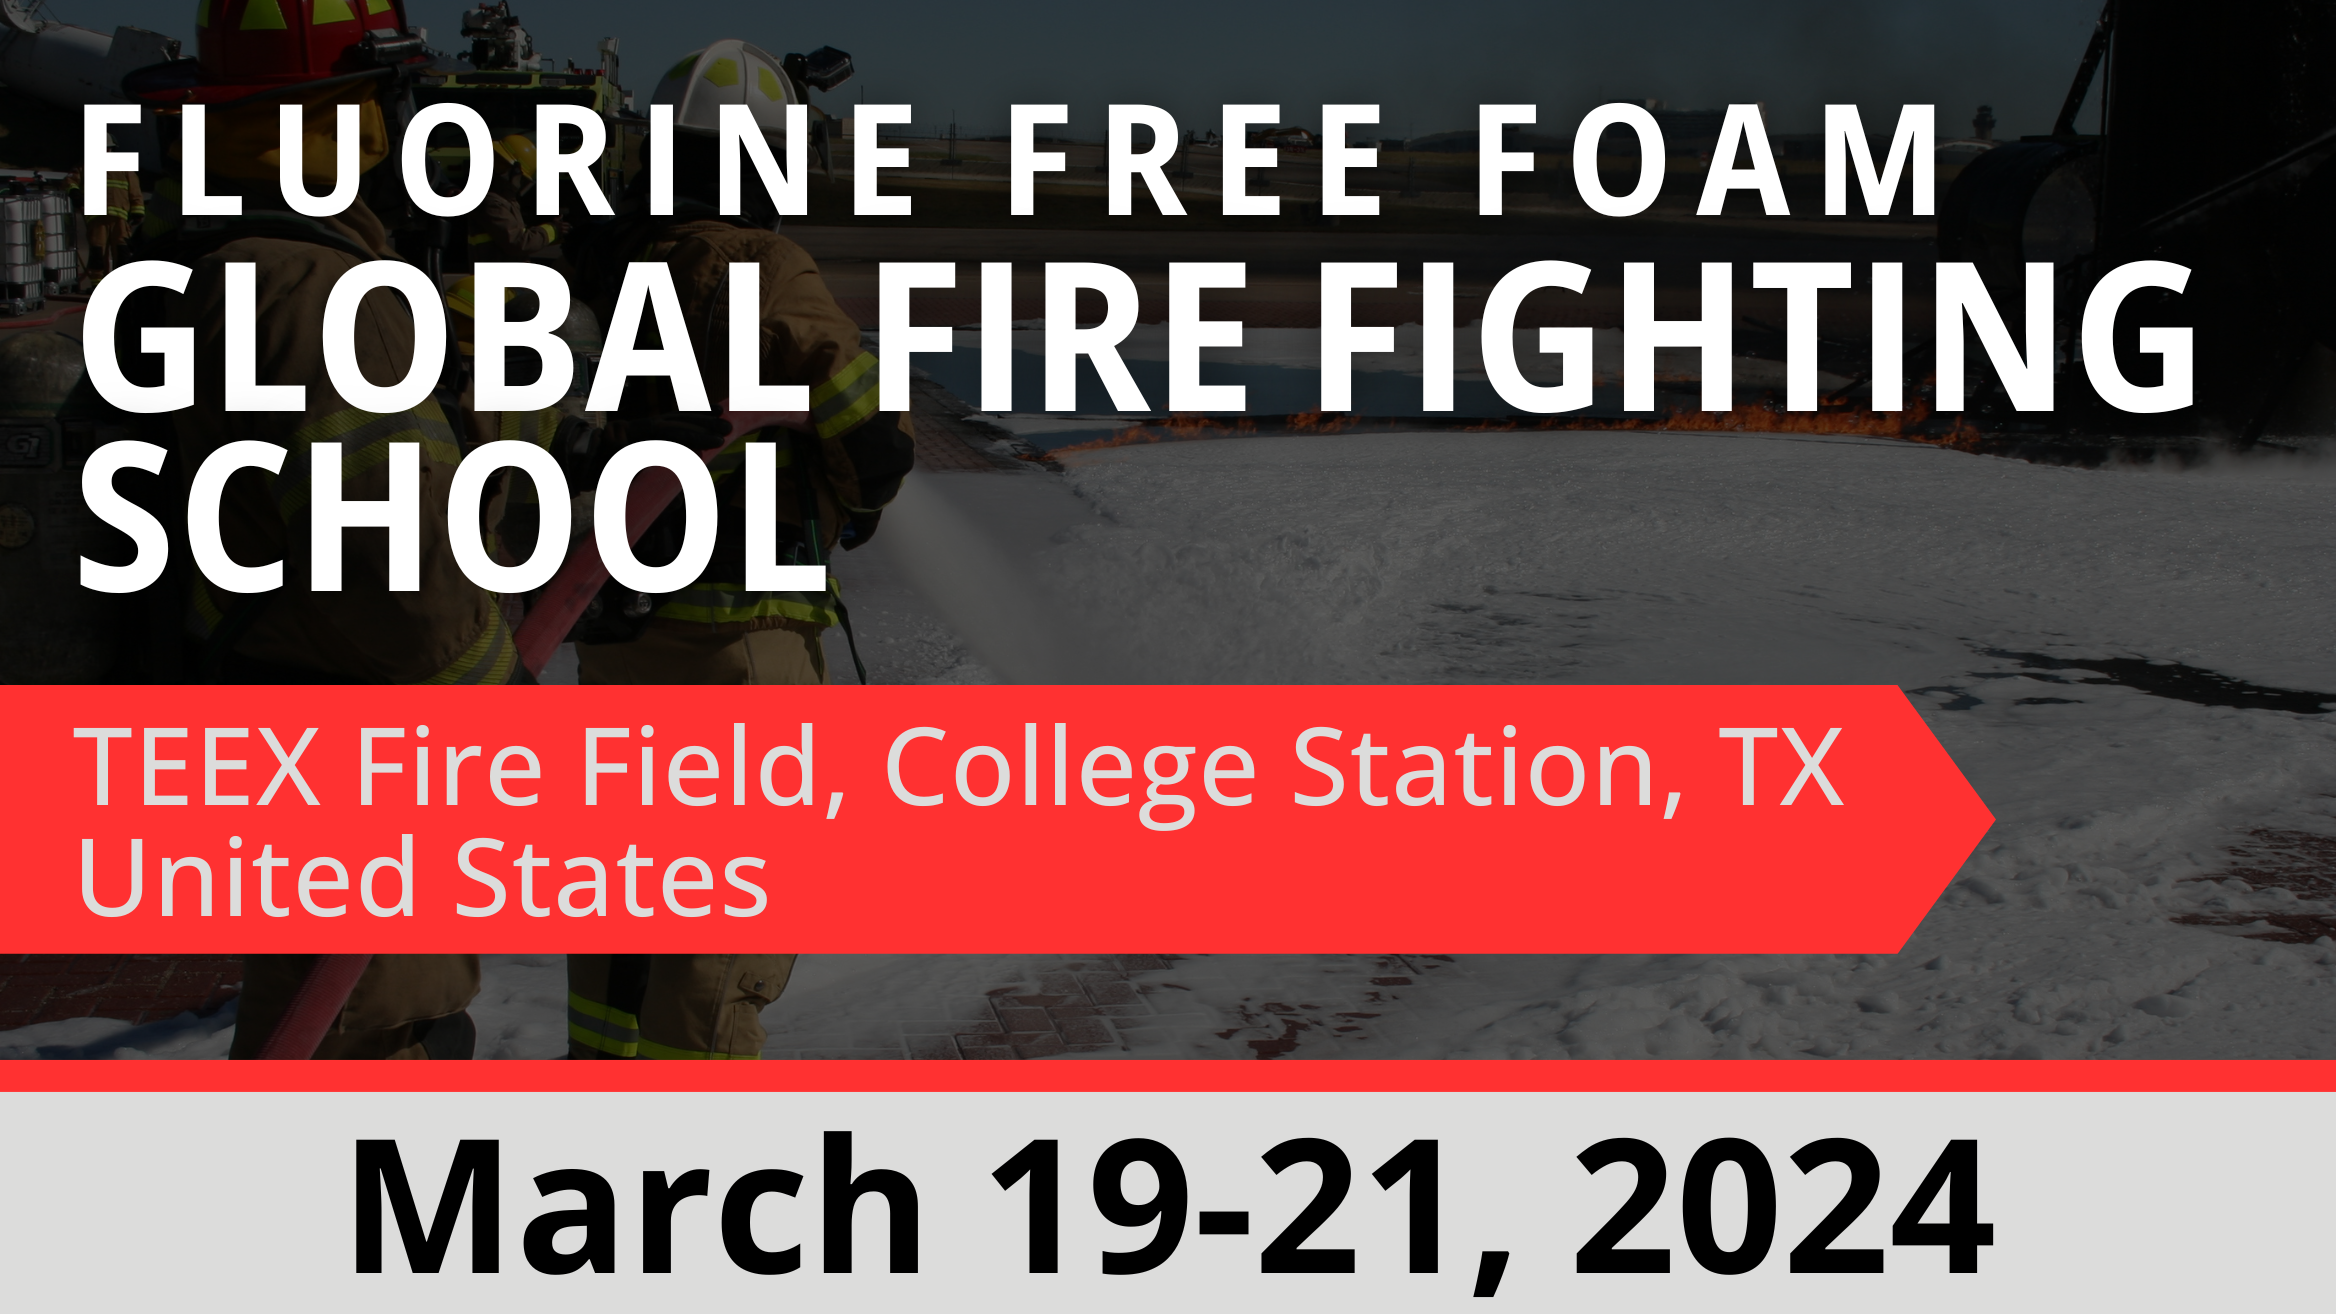 Fluorine Free Foam Global Firefighting School